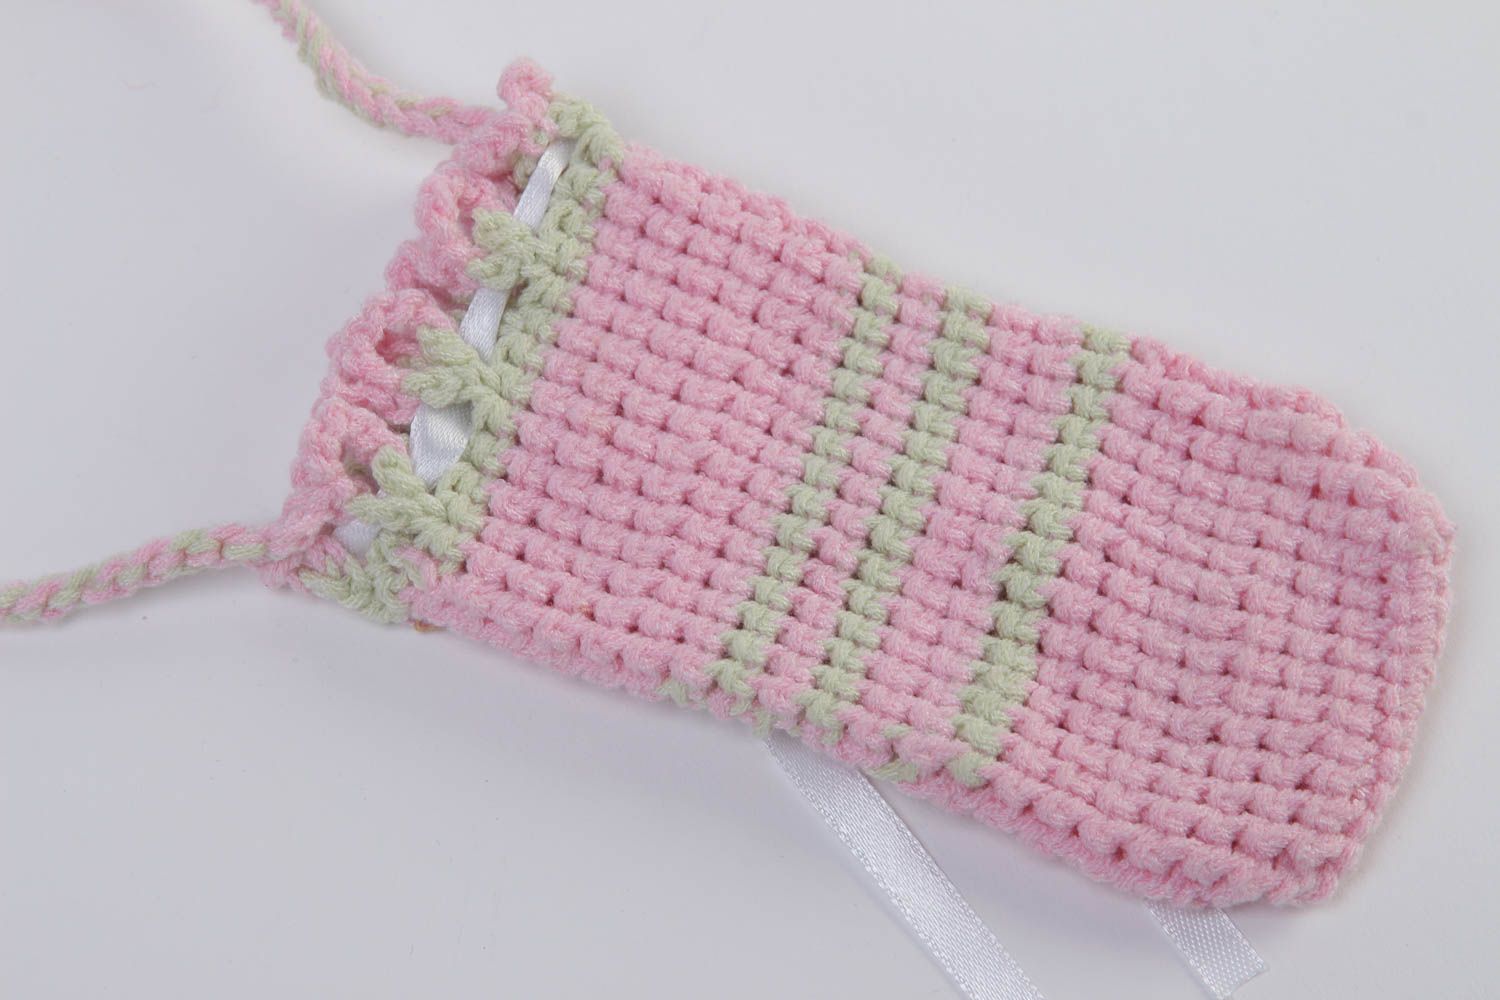 Beautiful handmade crochet phone case gadget accessories crochet ideas photo 4